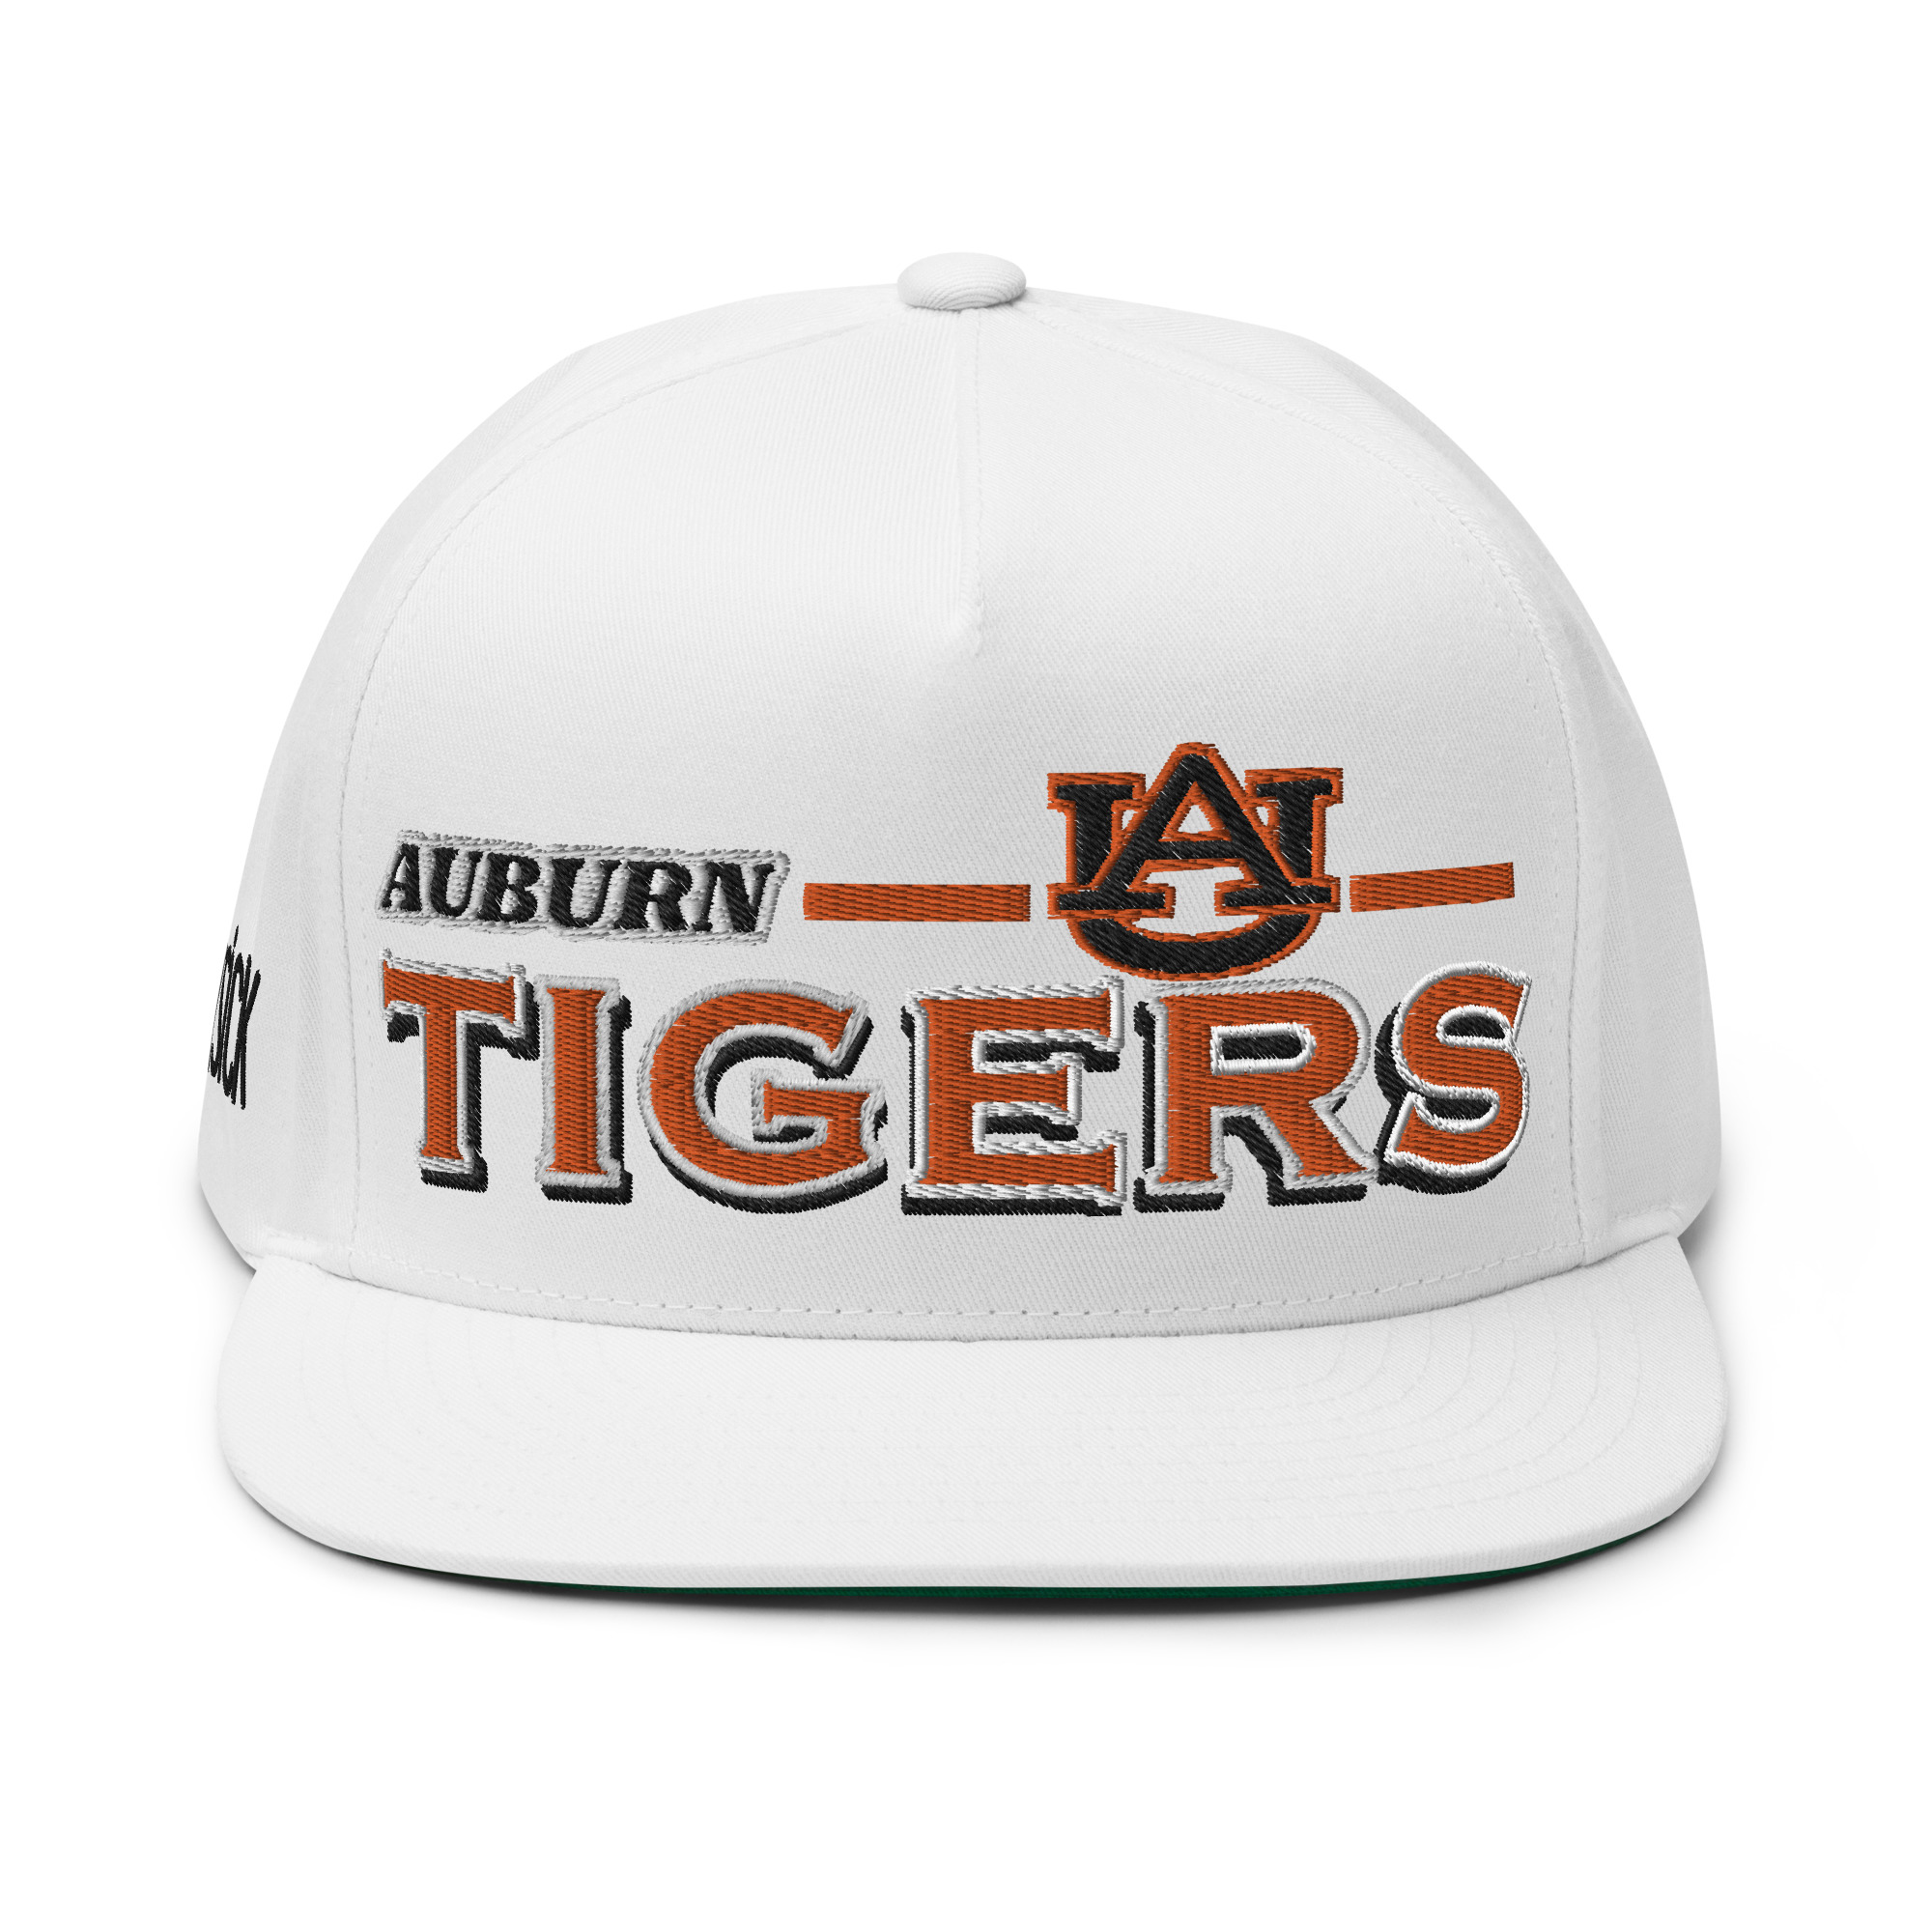 Auburn Tigers Flat Bill Cap